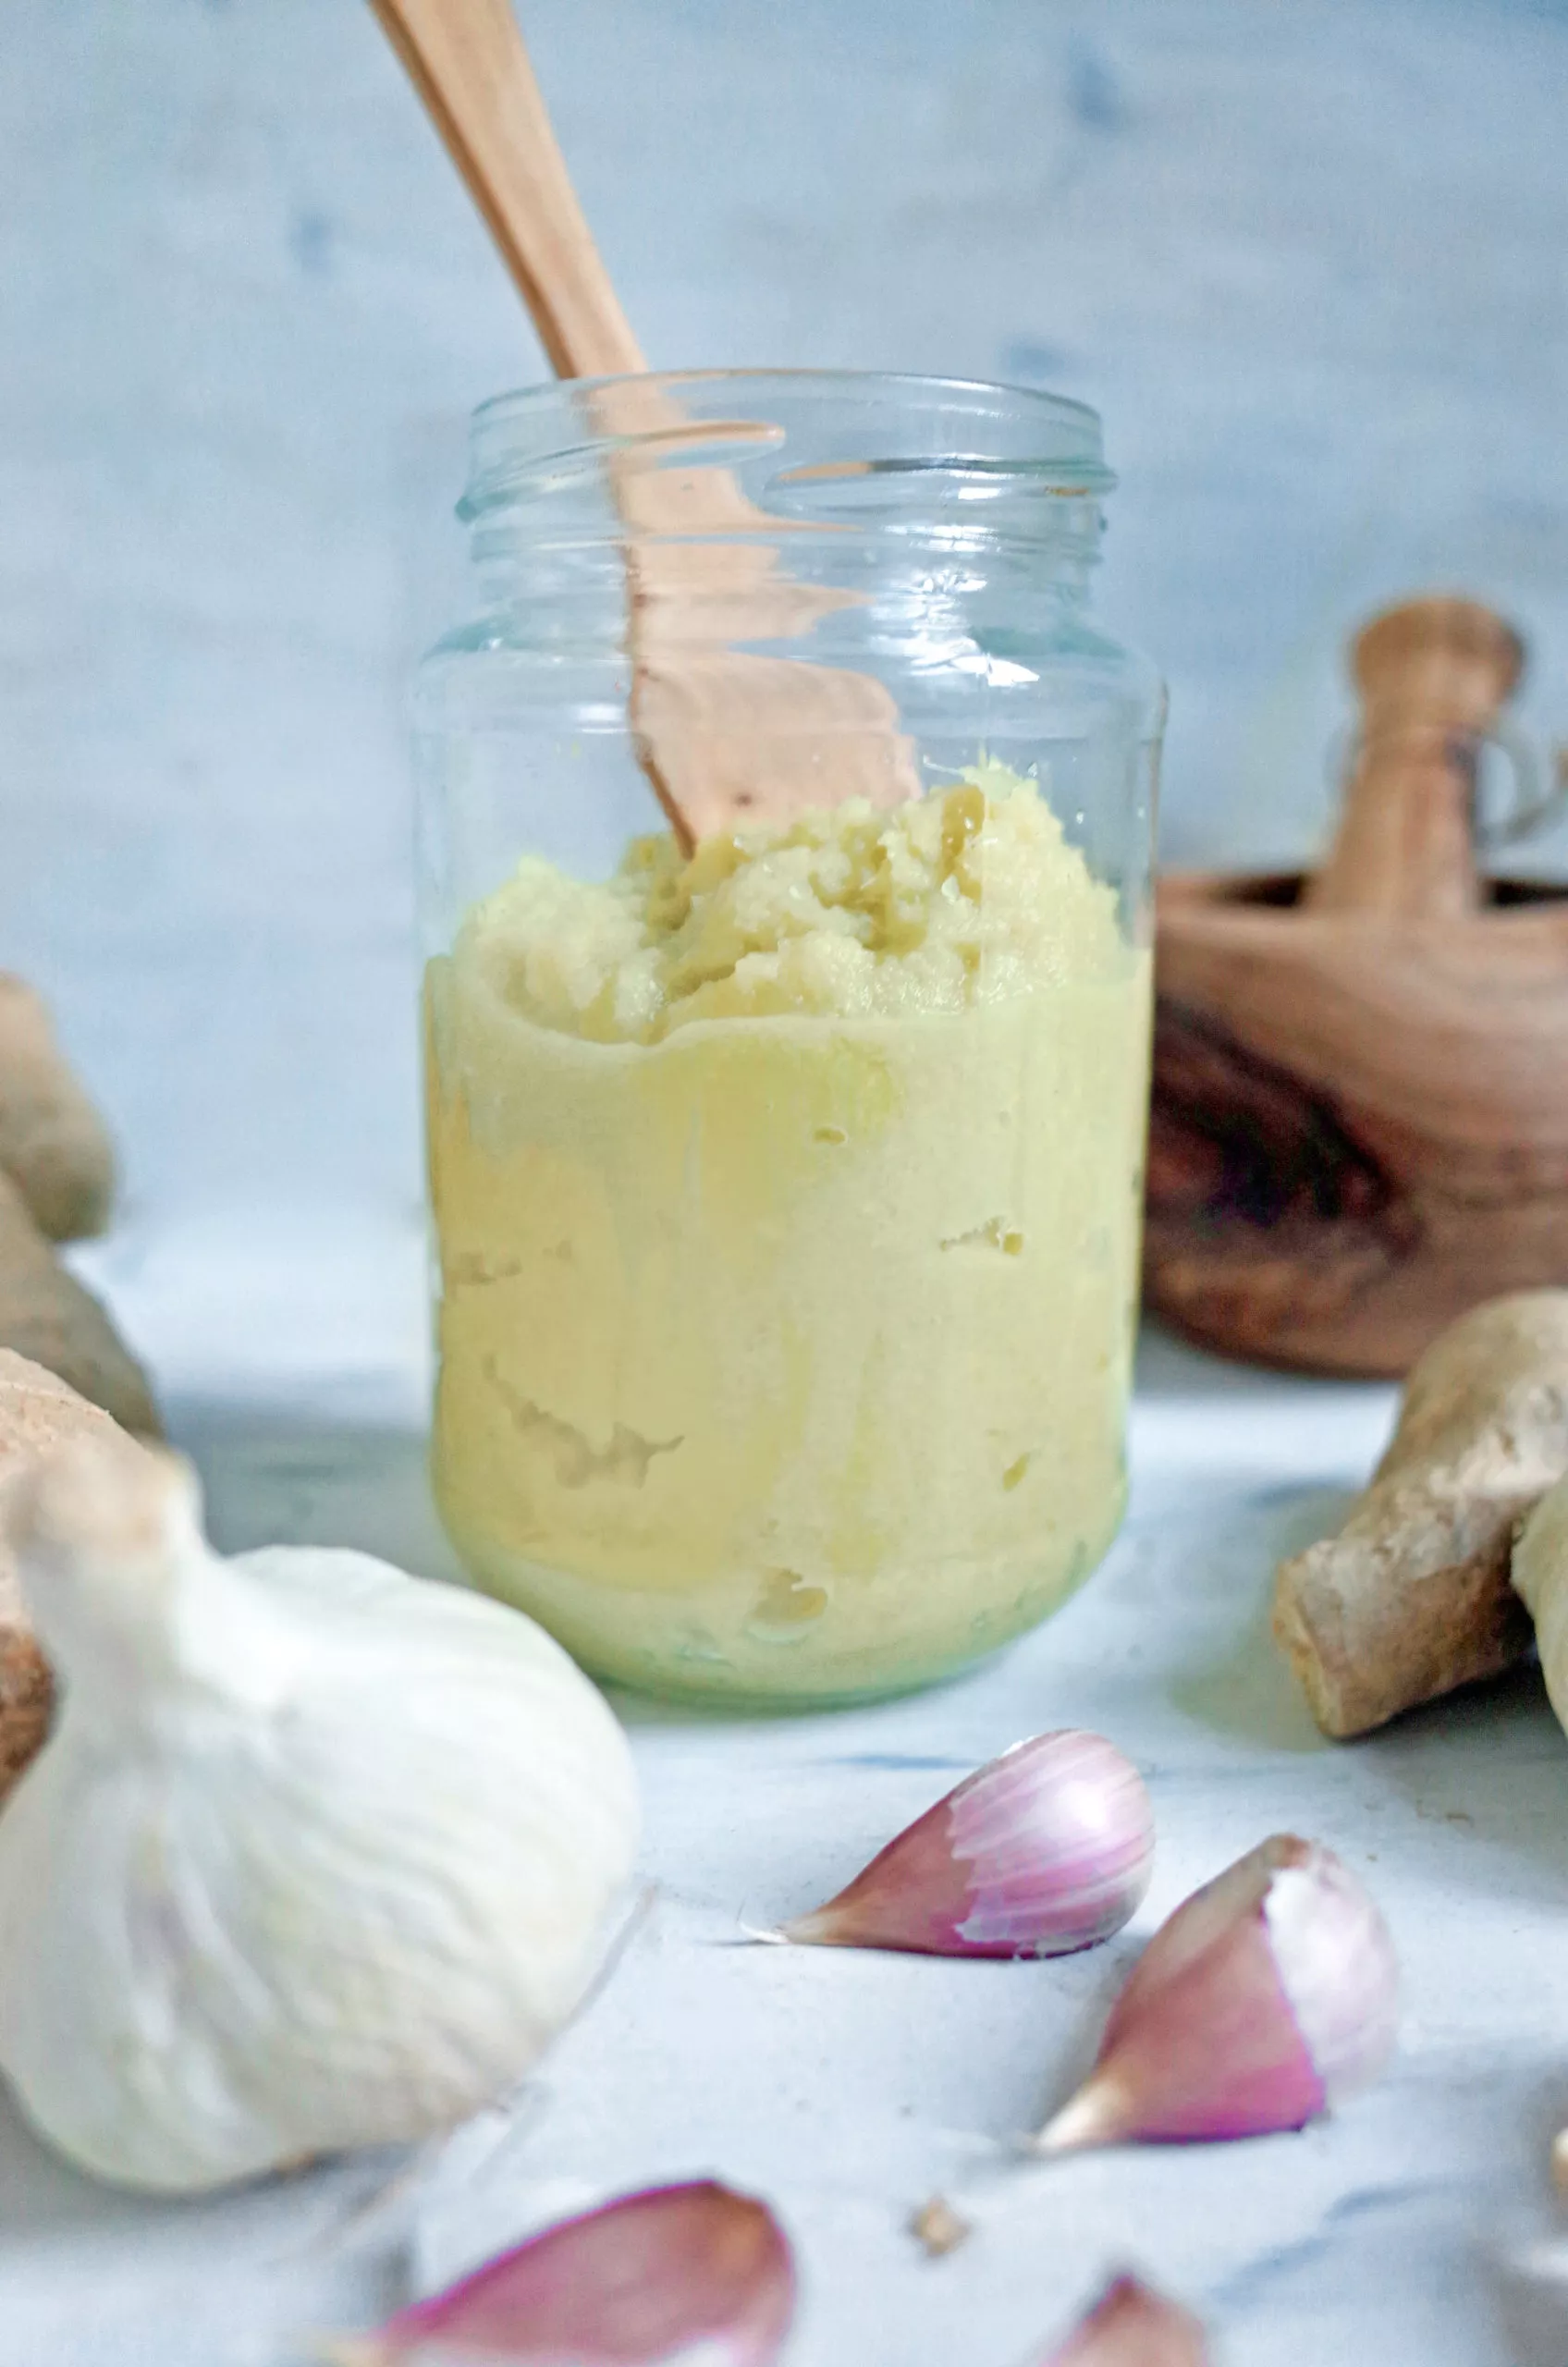 How to make Fresh Ginger Garlic Paste